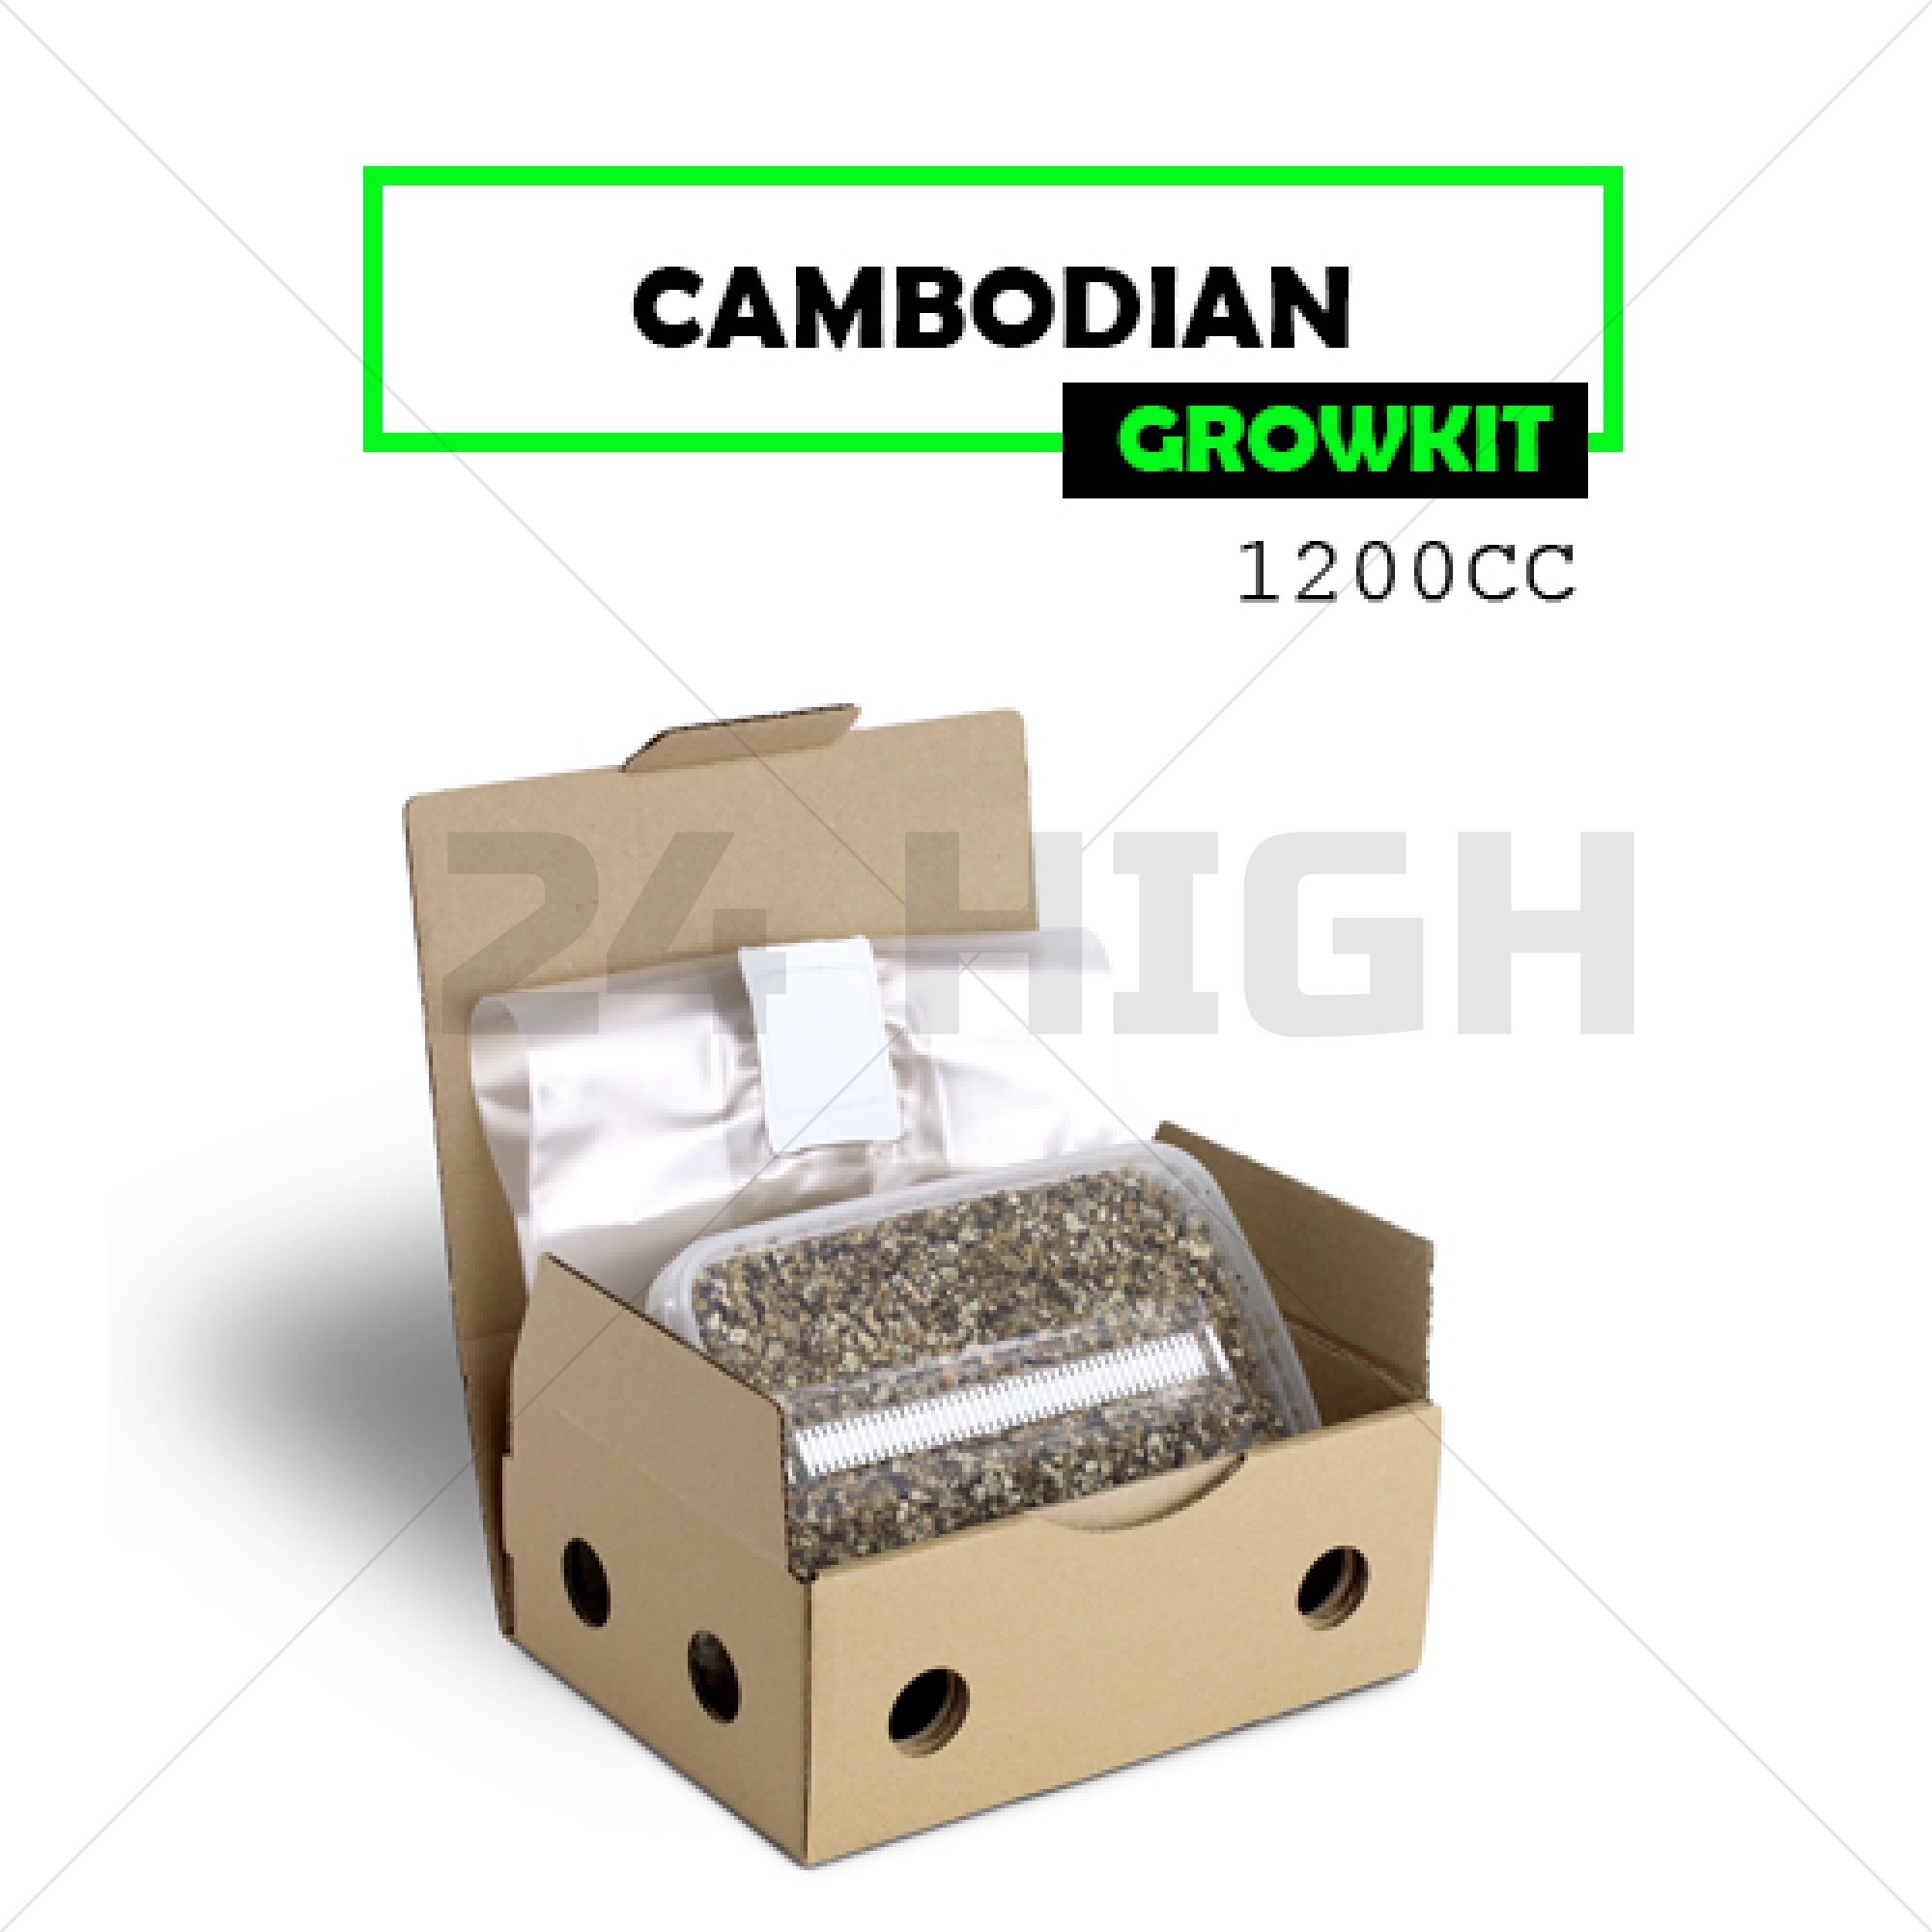 Kit de Cultivo de Setas Cambodian - Mondo